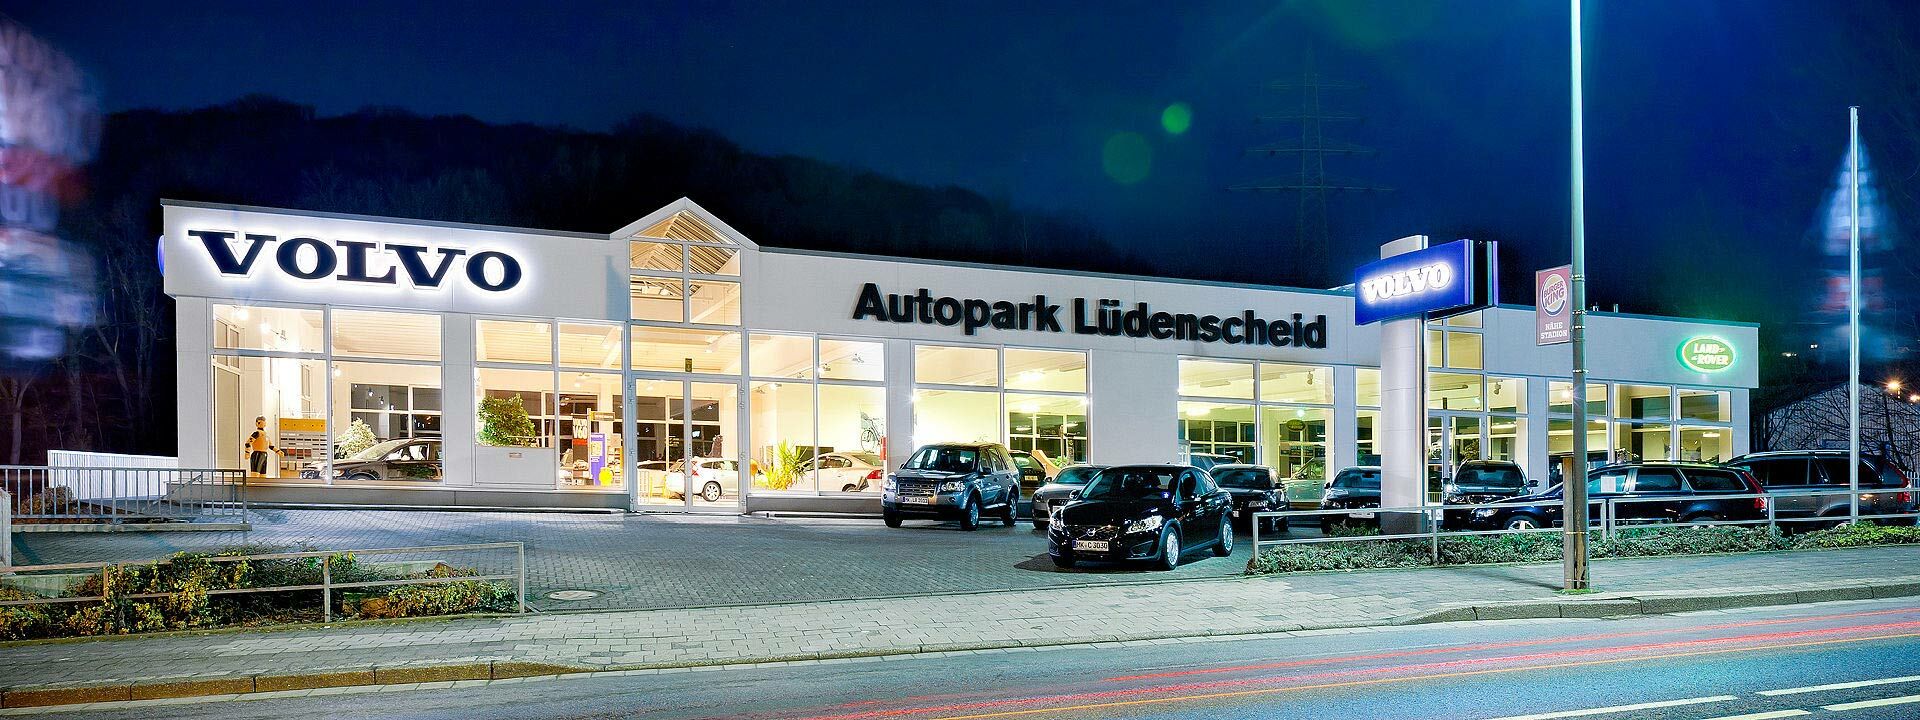 Außenansicht der MOBILITÄTSGRUPPE AMELUNG am Standort Lüdenscheid. Der Standort ist Händler für Volvo & Land Rover Fahrzeuge.